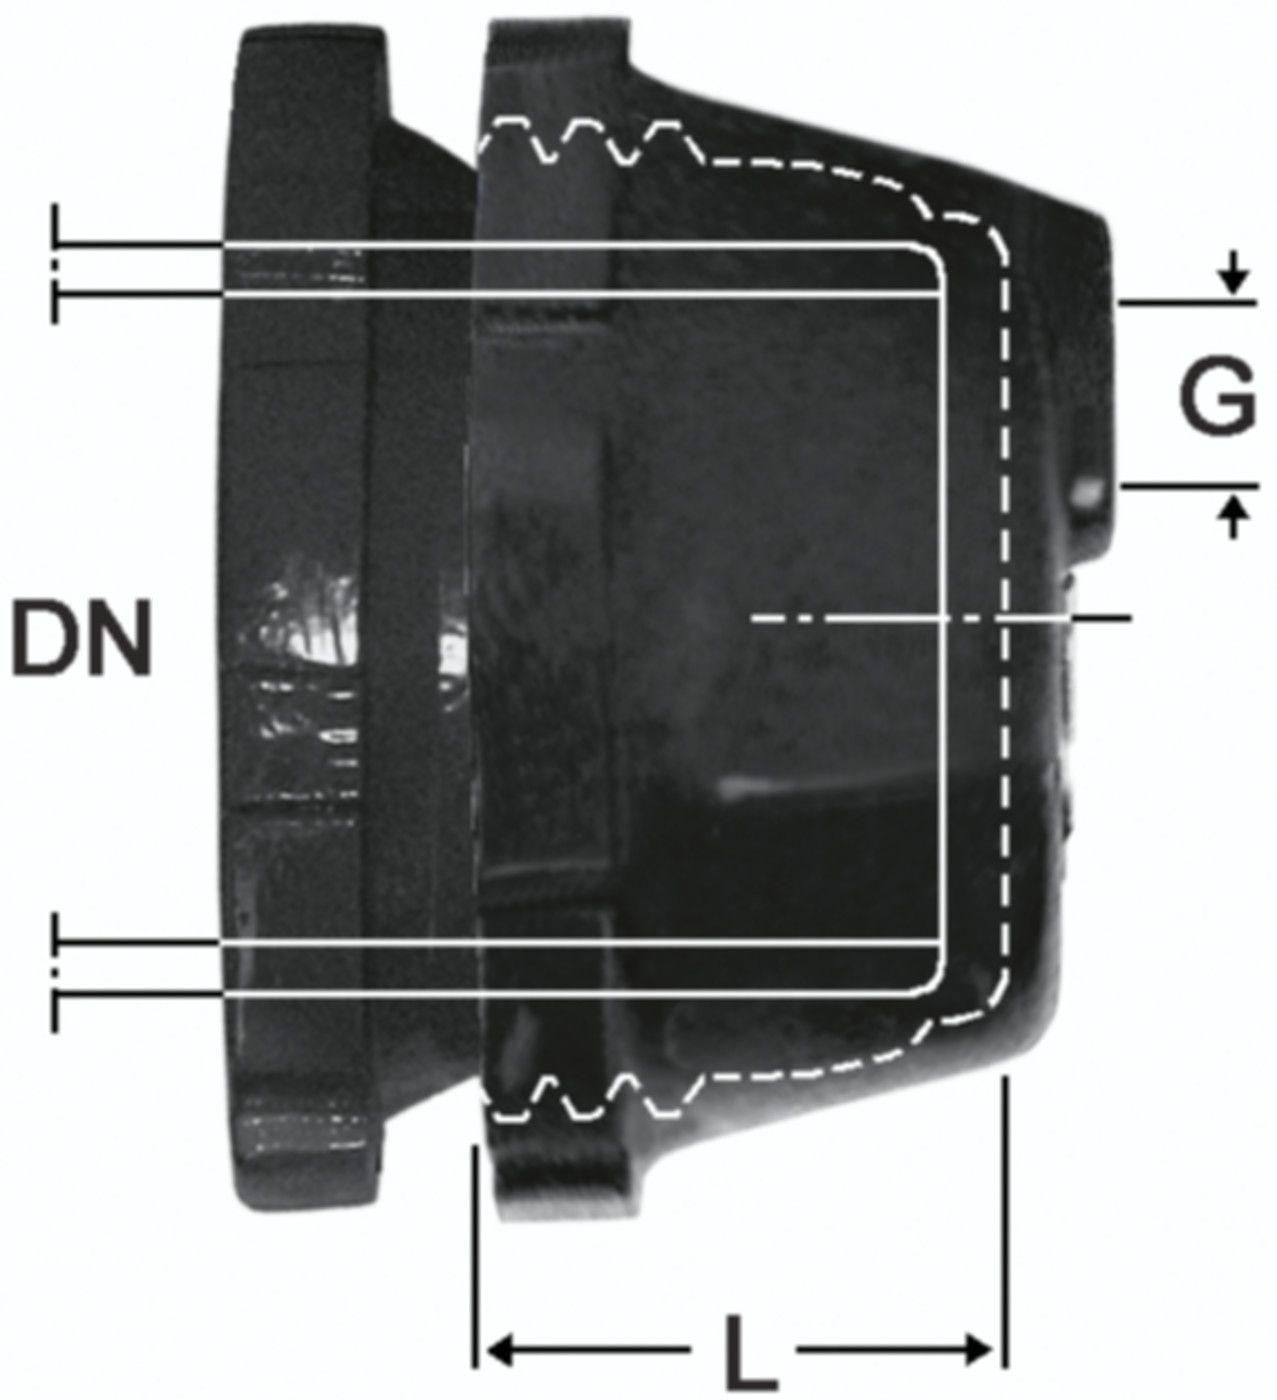 SM-Verschlusskappe Fig. 2395 DN 100 - 1 1/4" - Von Roll Schraubmuffenformstücke